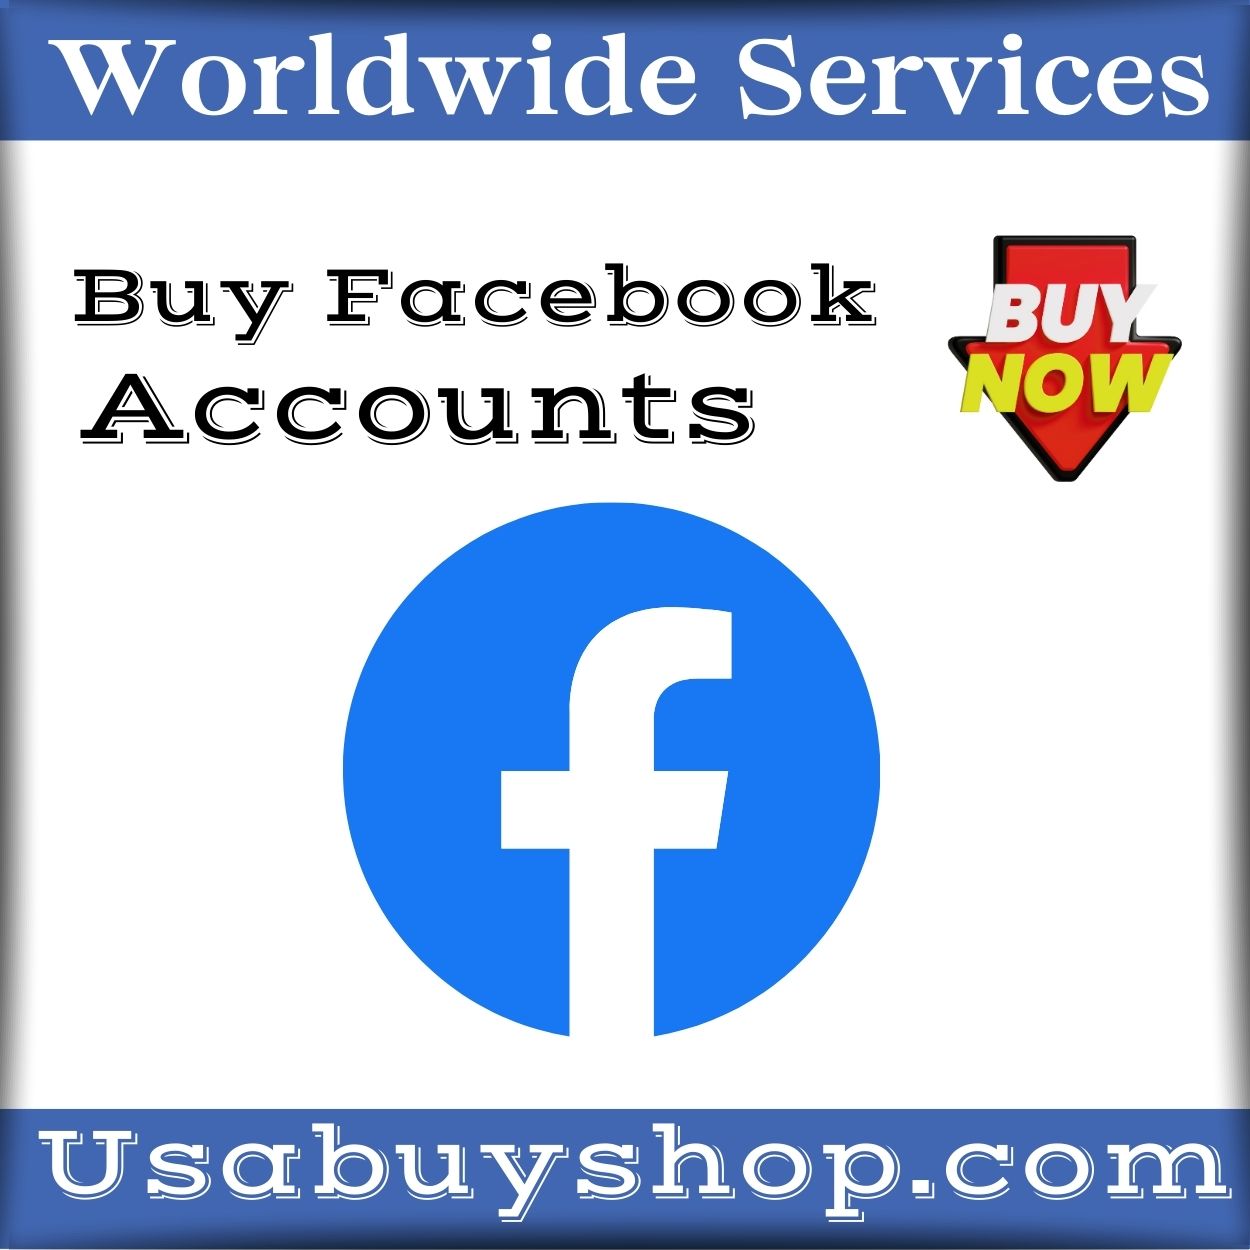 Buy Facebook Accounts -100% PVA Old Facebook Account